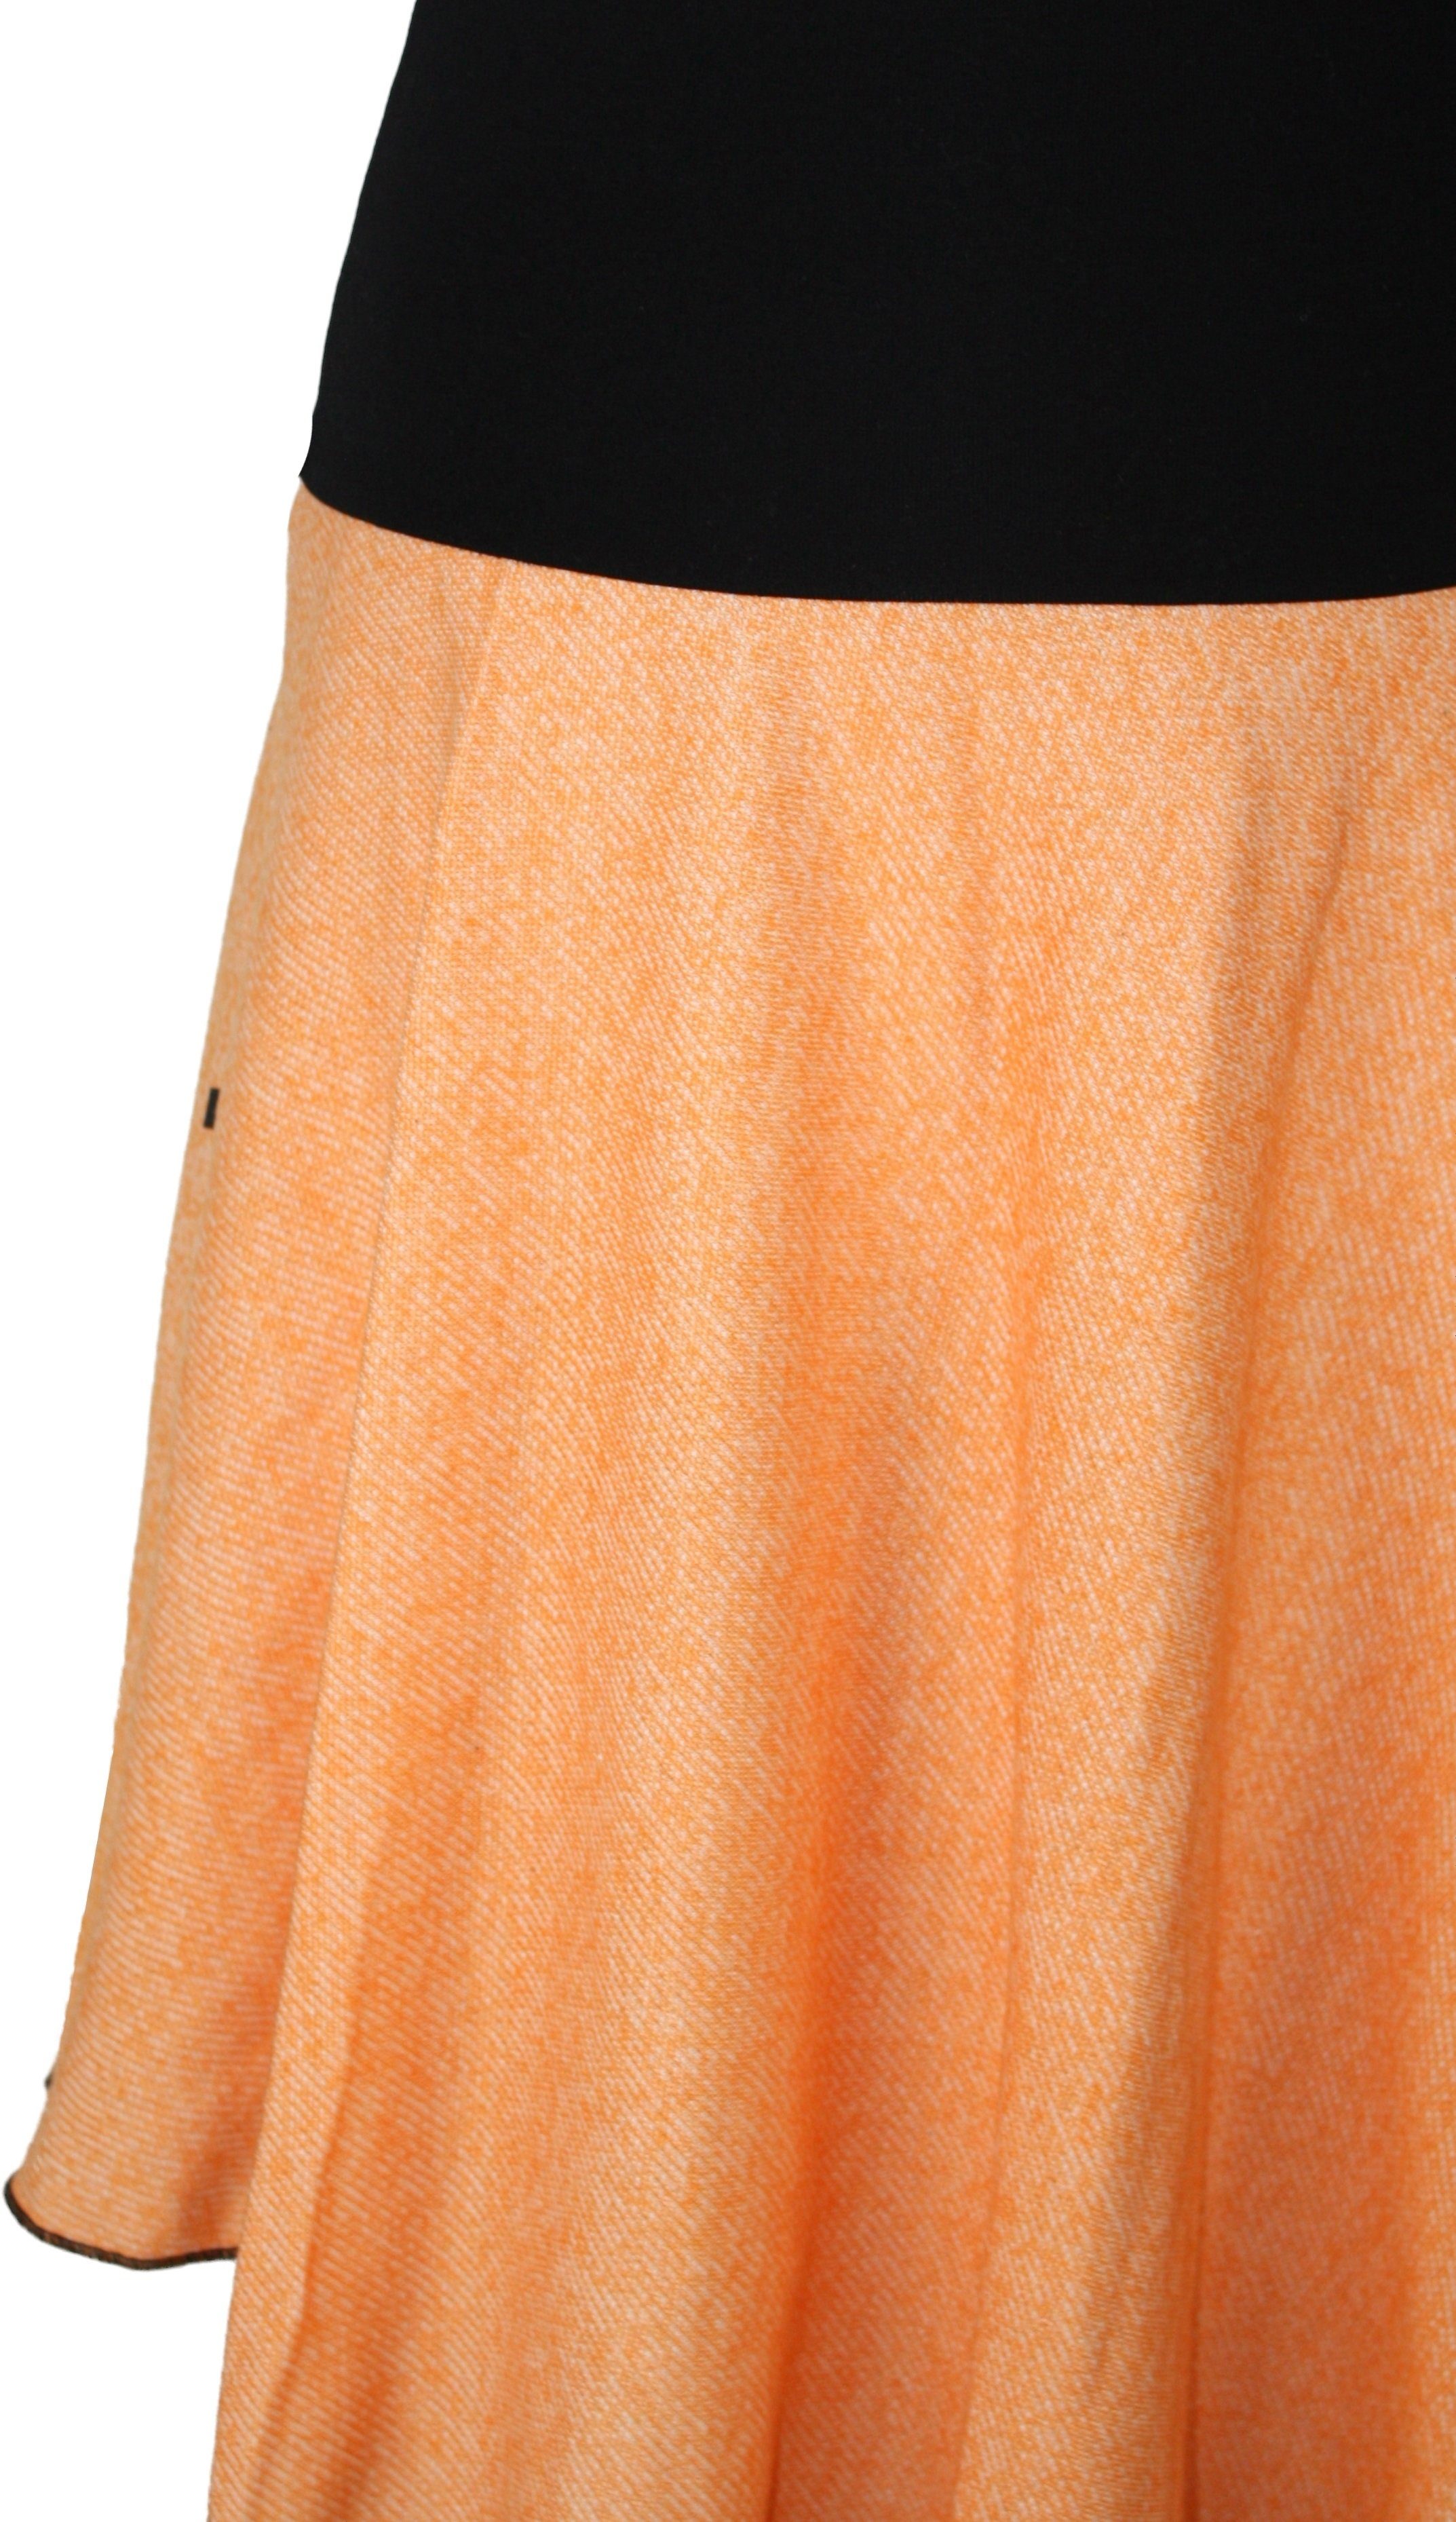 Orange Bund Asymmetrisch Orange, meliert dunkle Senfgelb design elastischer Khaki, Sweat A-Linien-Rock